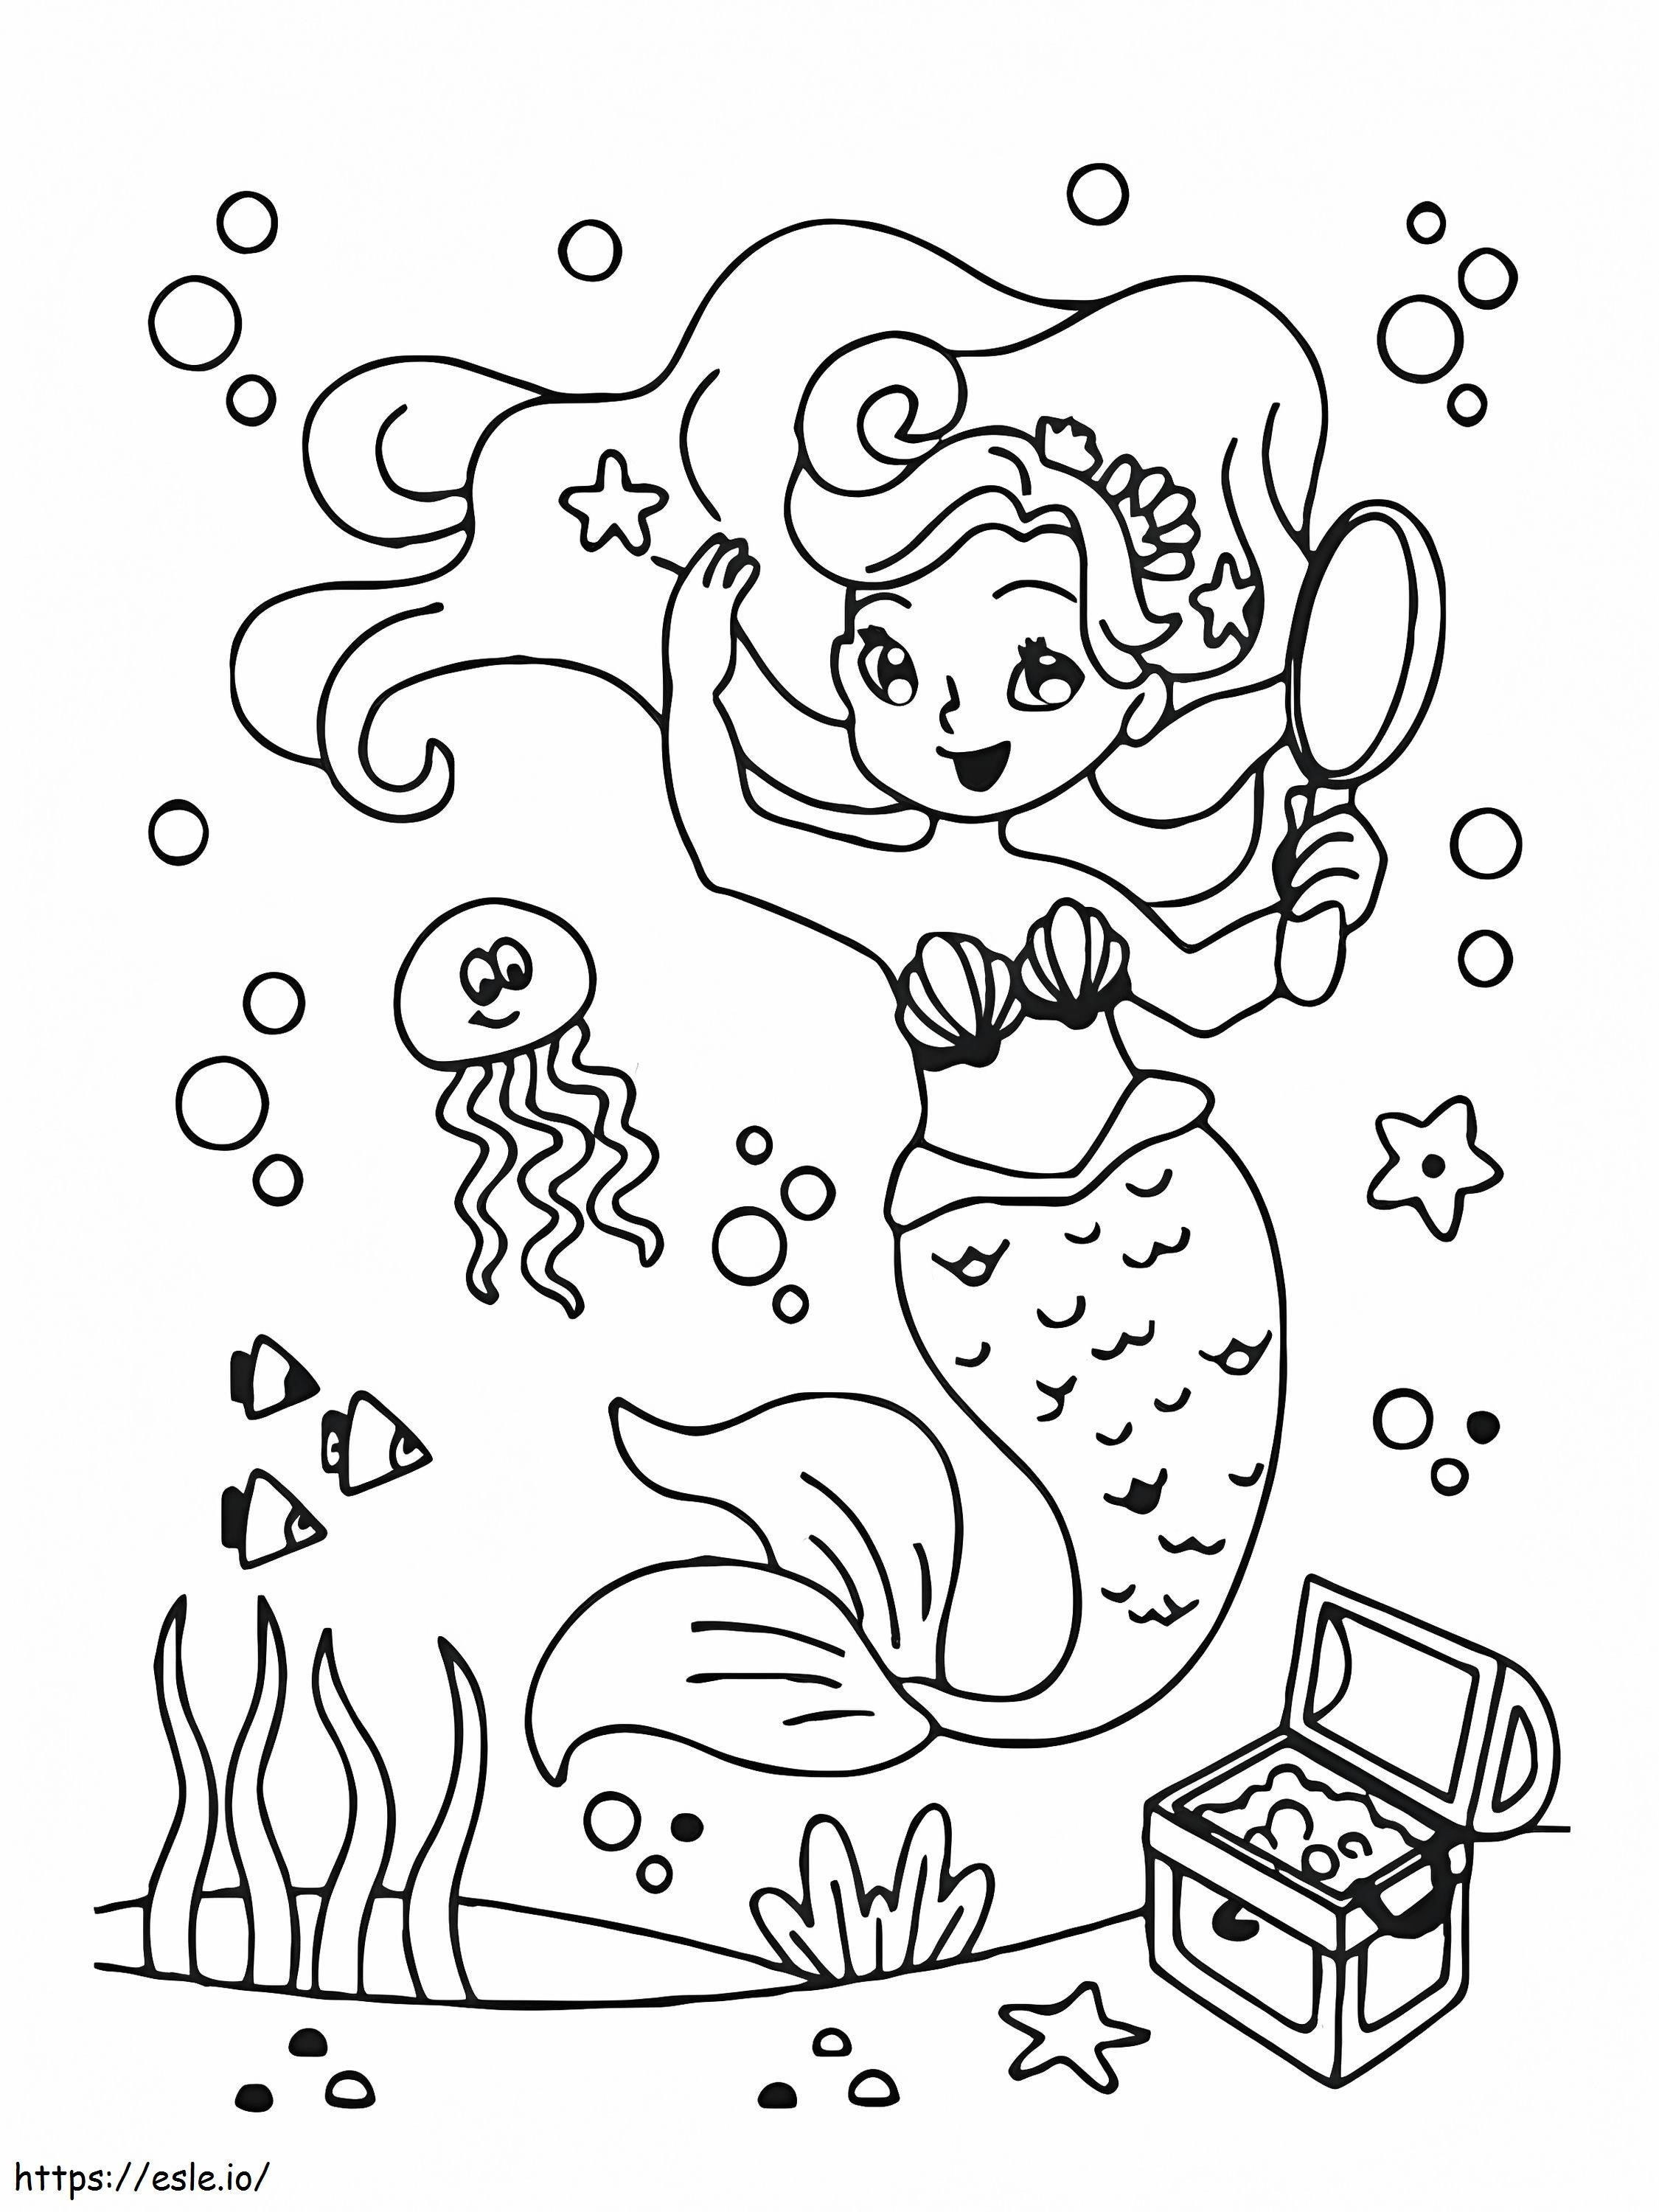 Meerjungfrau und Schatz ausmalbilder